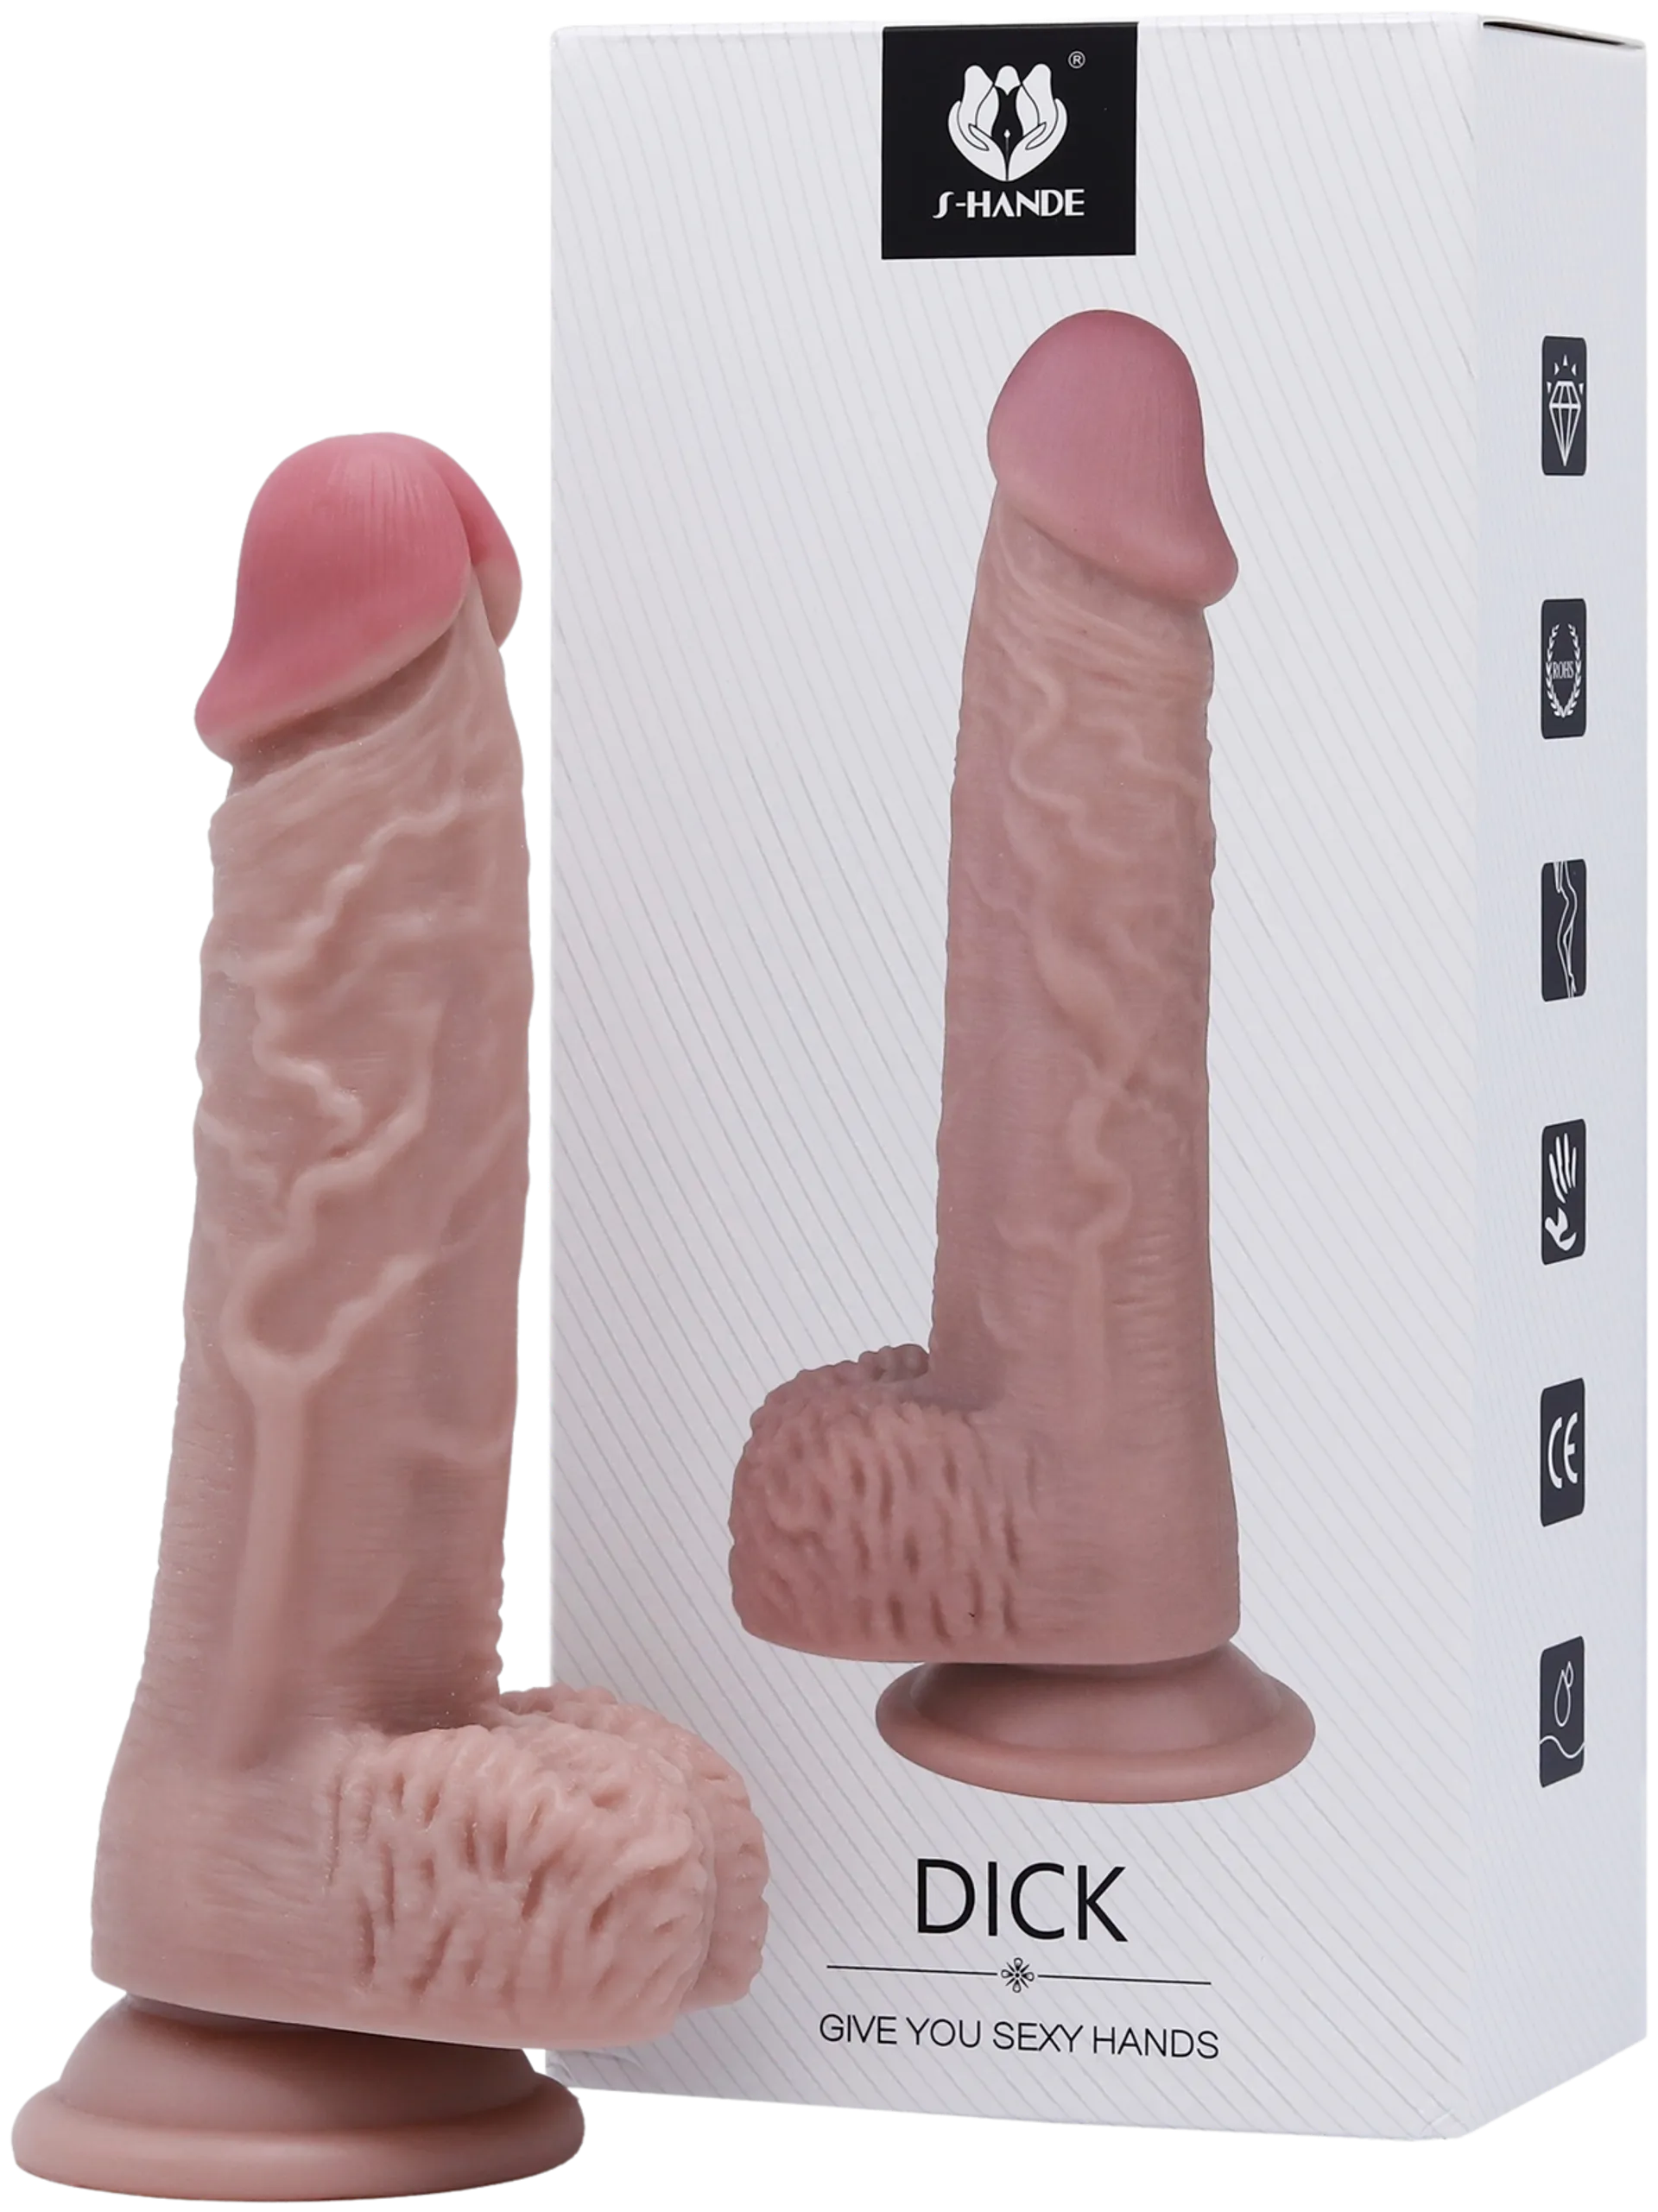 Dick dildo - 1